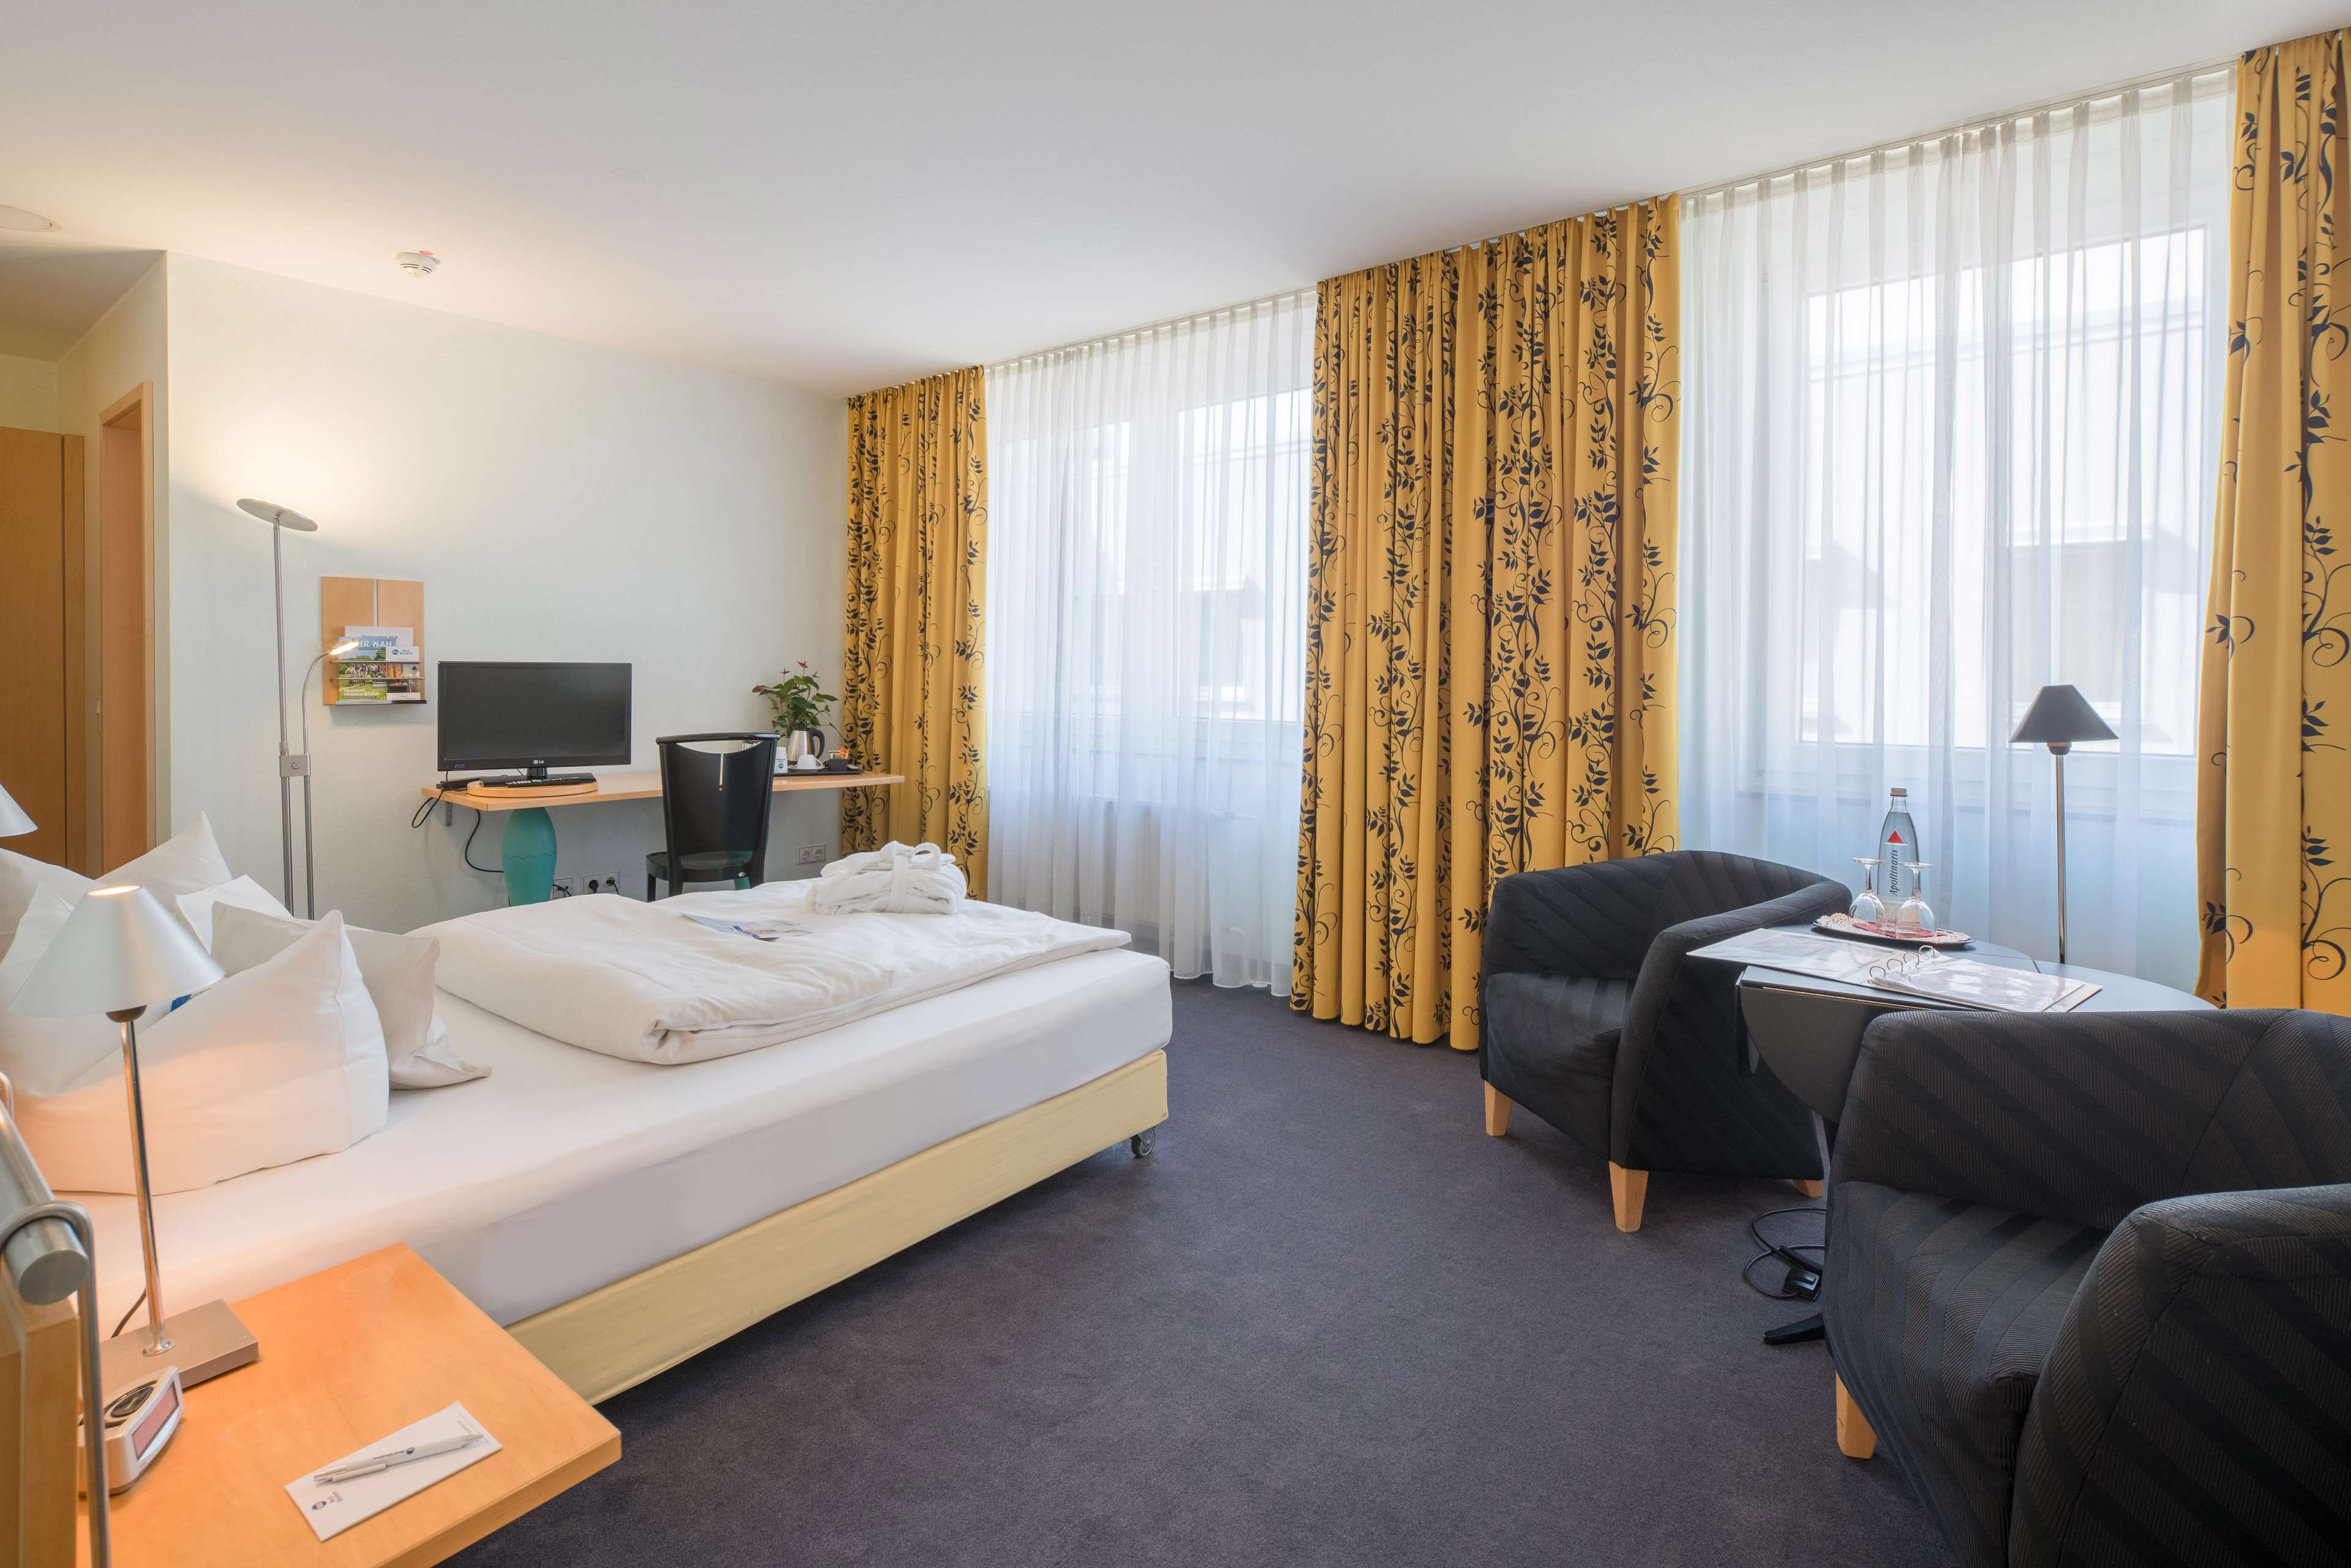 Best Western Hotel Im Forum Muelheim, Hans B�ckler Platz 19 in Muelheim